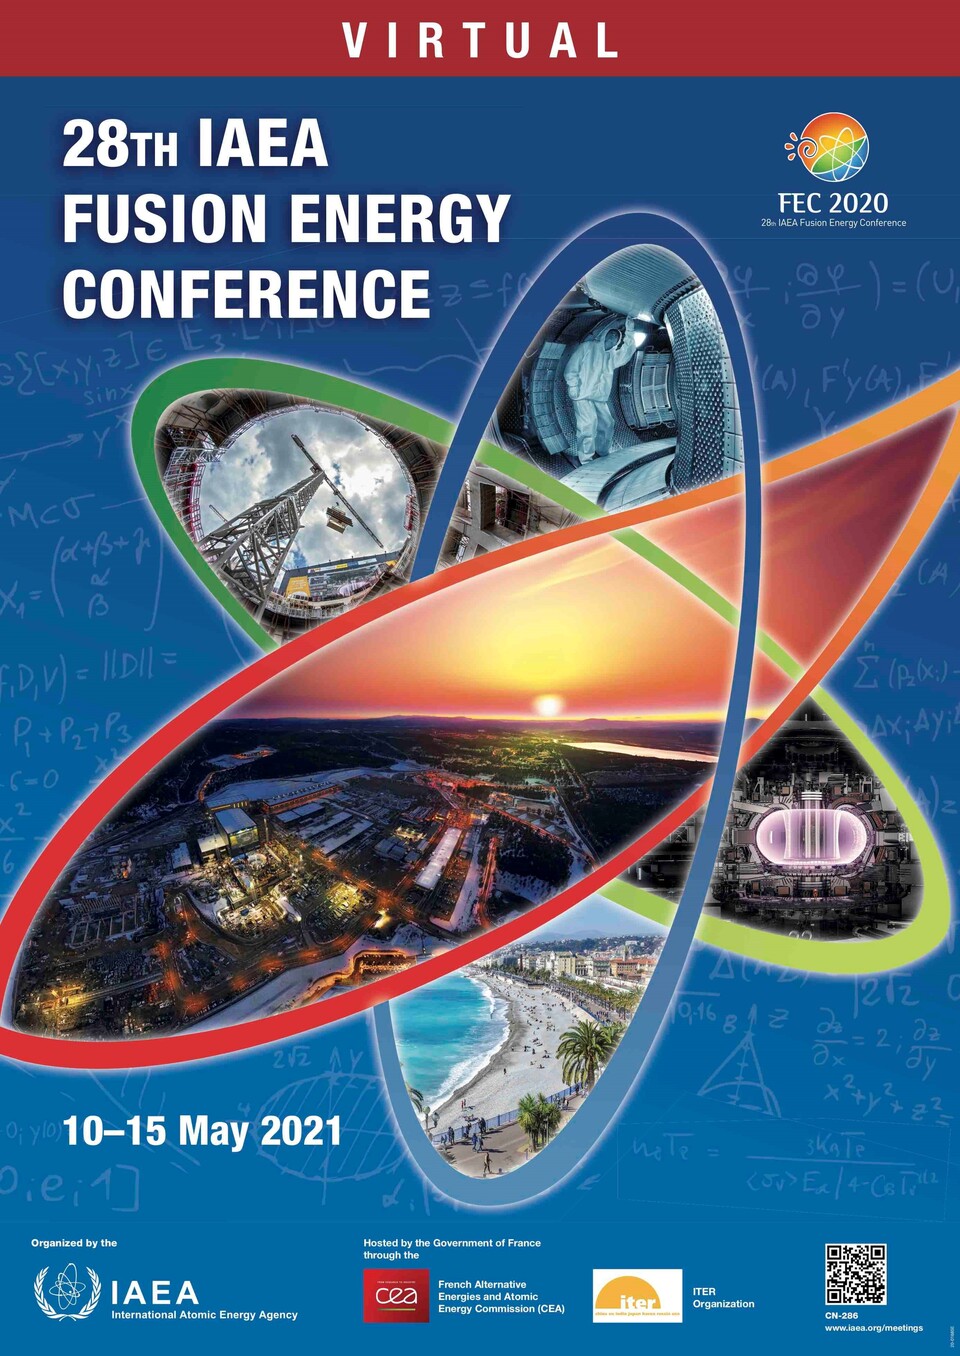 제28회 IAEA 핵융합에너지 컨퍼런스 안내 포스터.